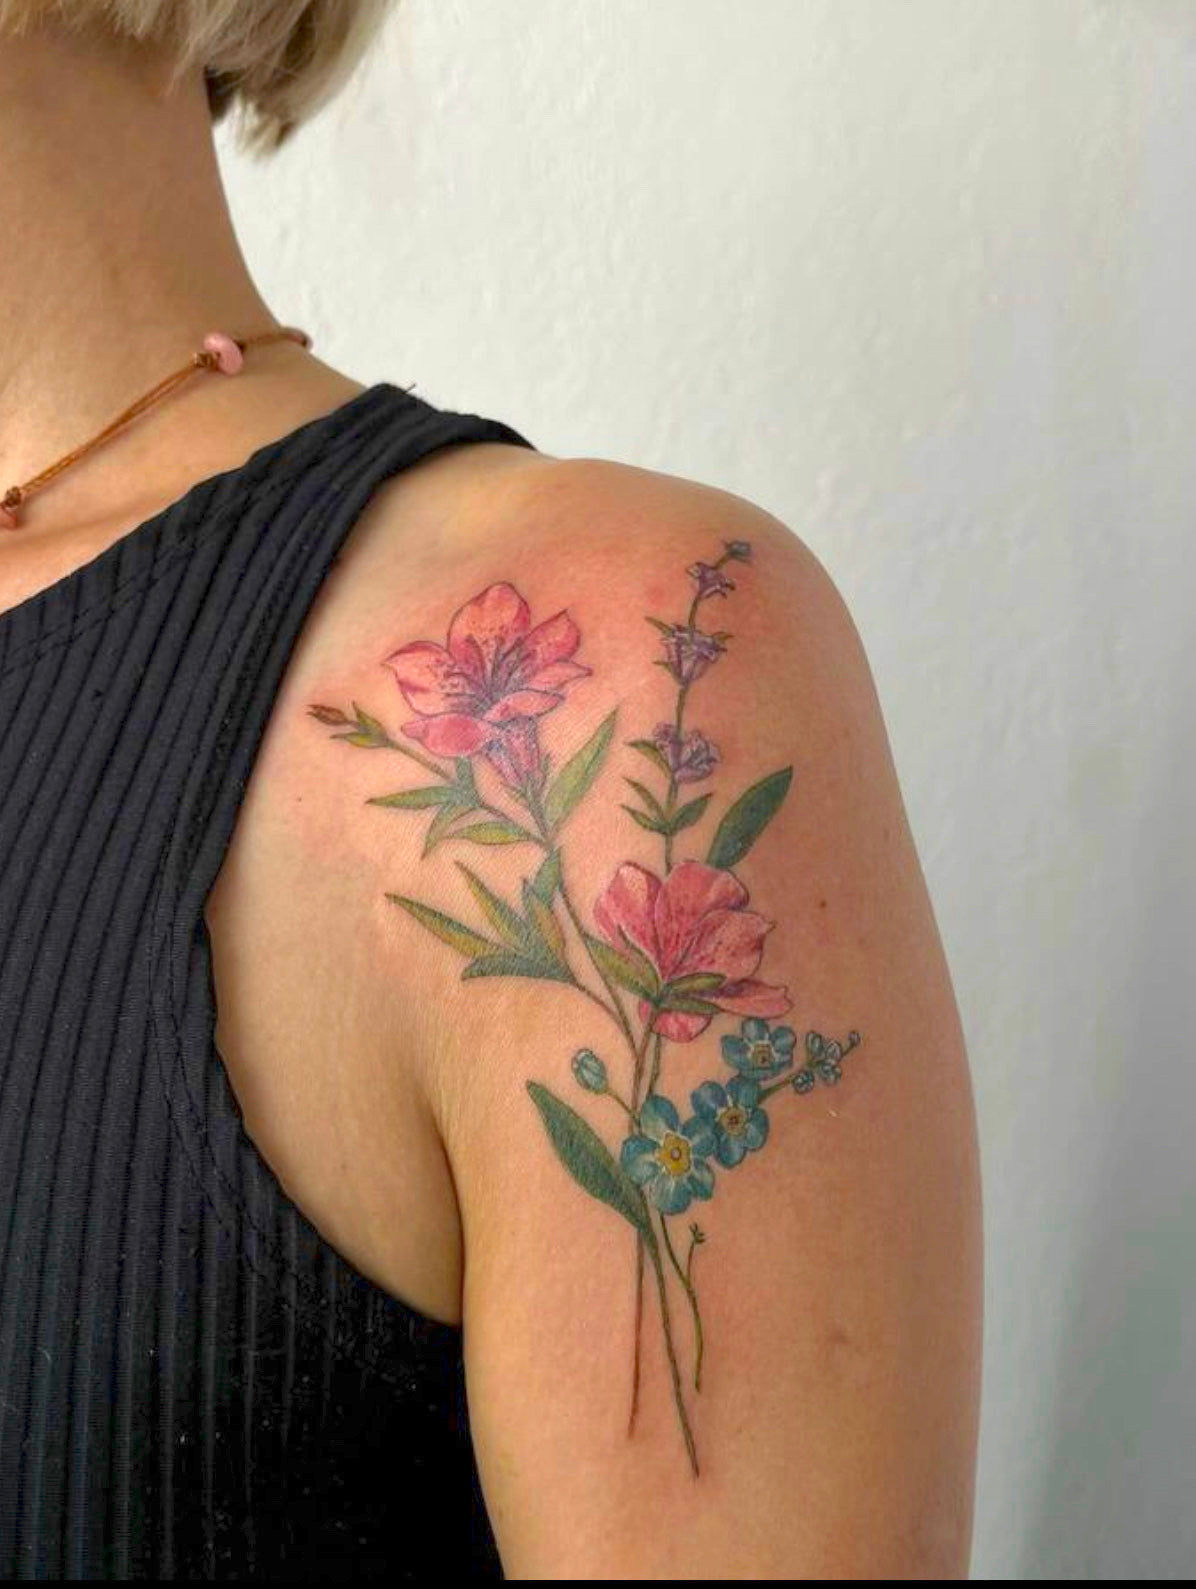 Taller de tatuaje "Full Color Botanical" con Macarena en Buenos Aires, Argentina